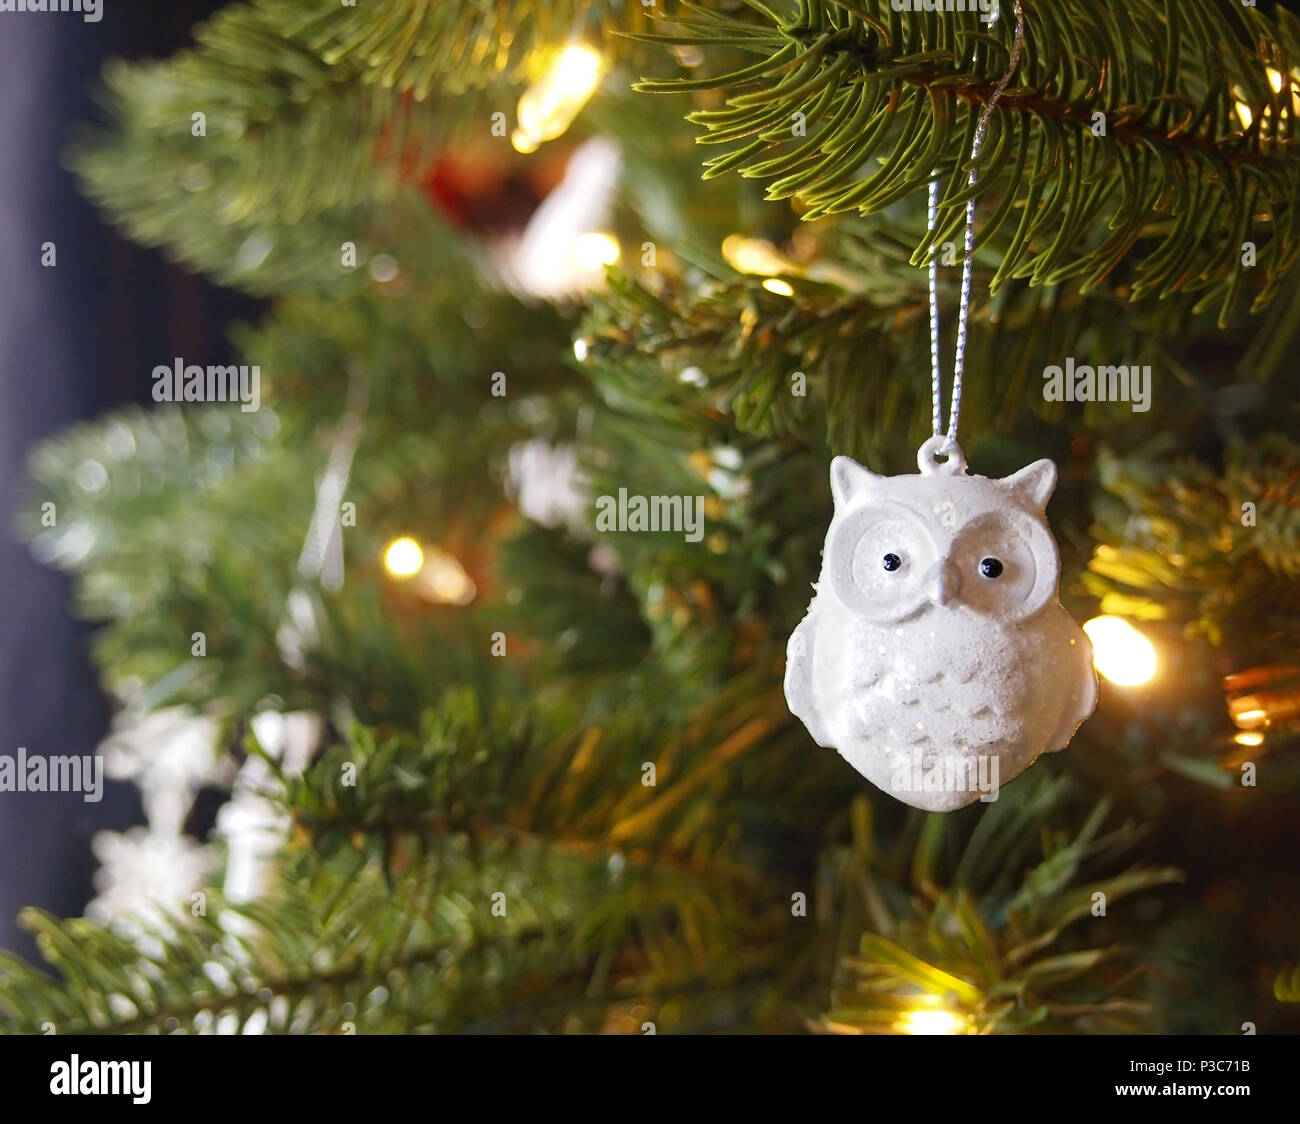 Ein funkelnd weiß Keramik Eule Christbaumschmuck mit Glitzer hängt von  einer Niederlassung eines Weihnachtsbaum mit leuchtenden goldenen Lichter  Stockfotografie - Alamy